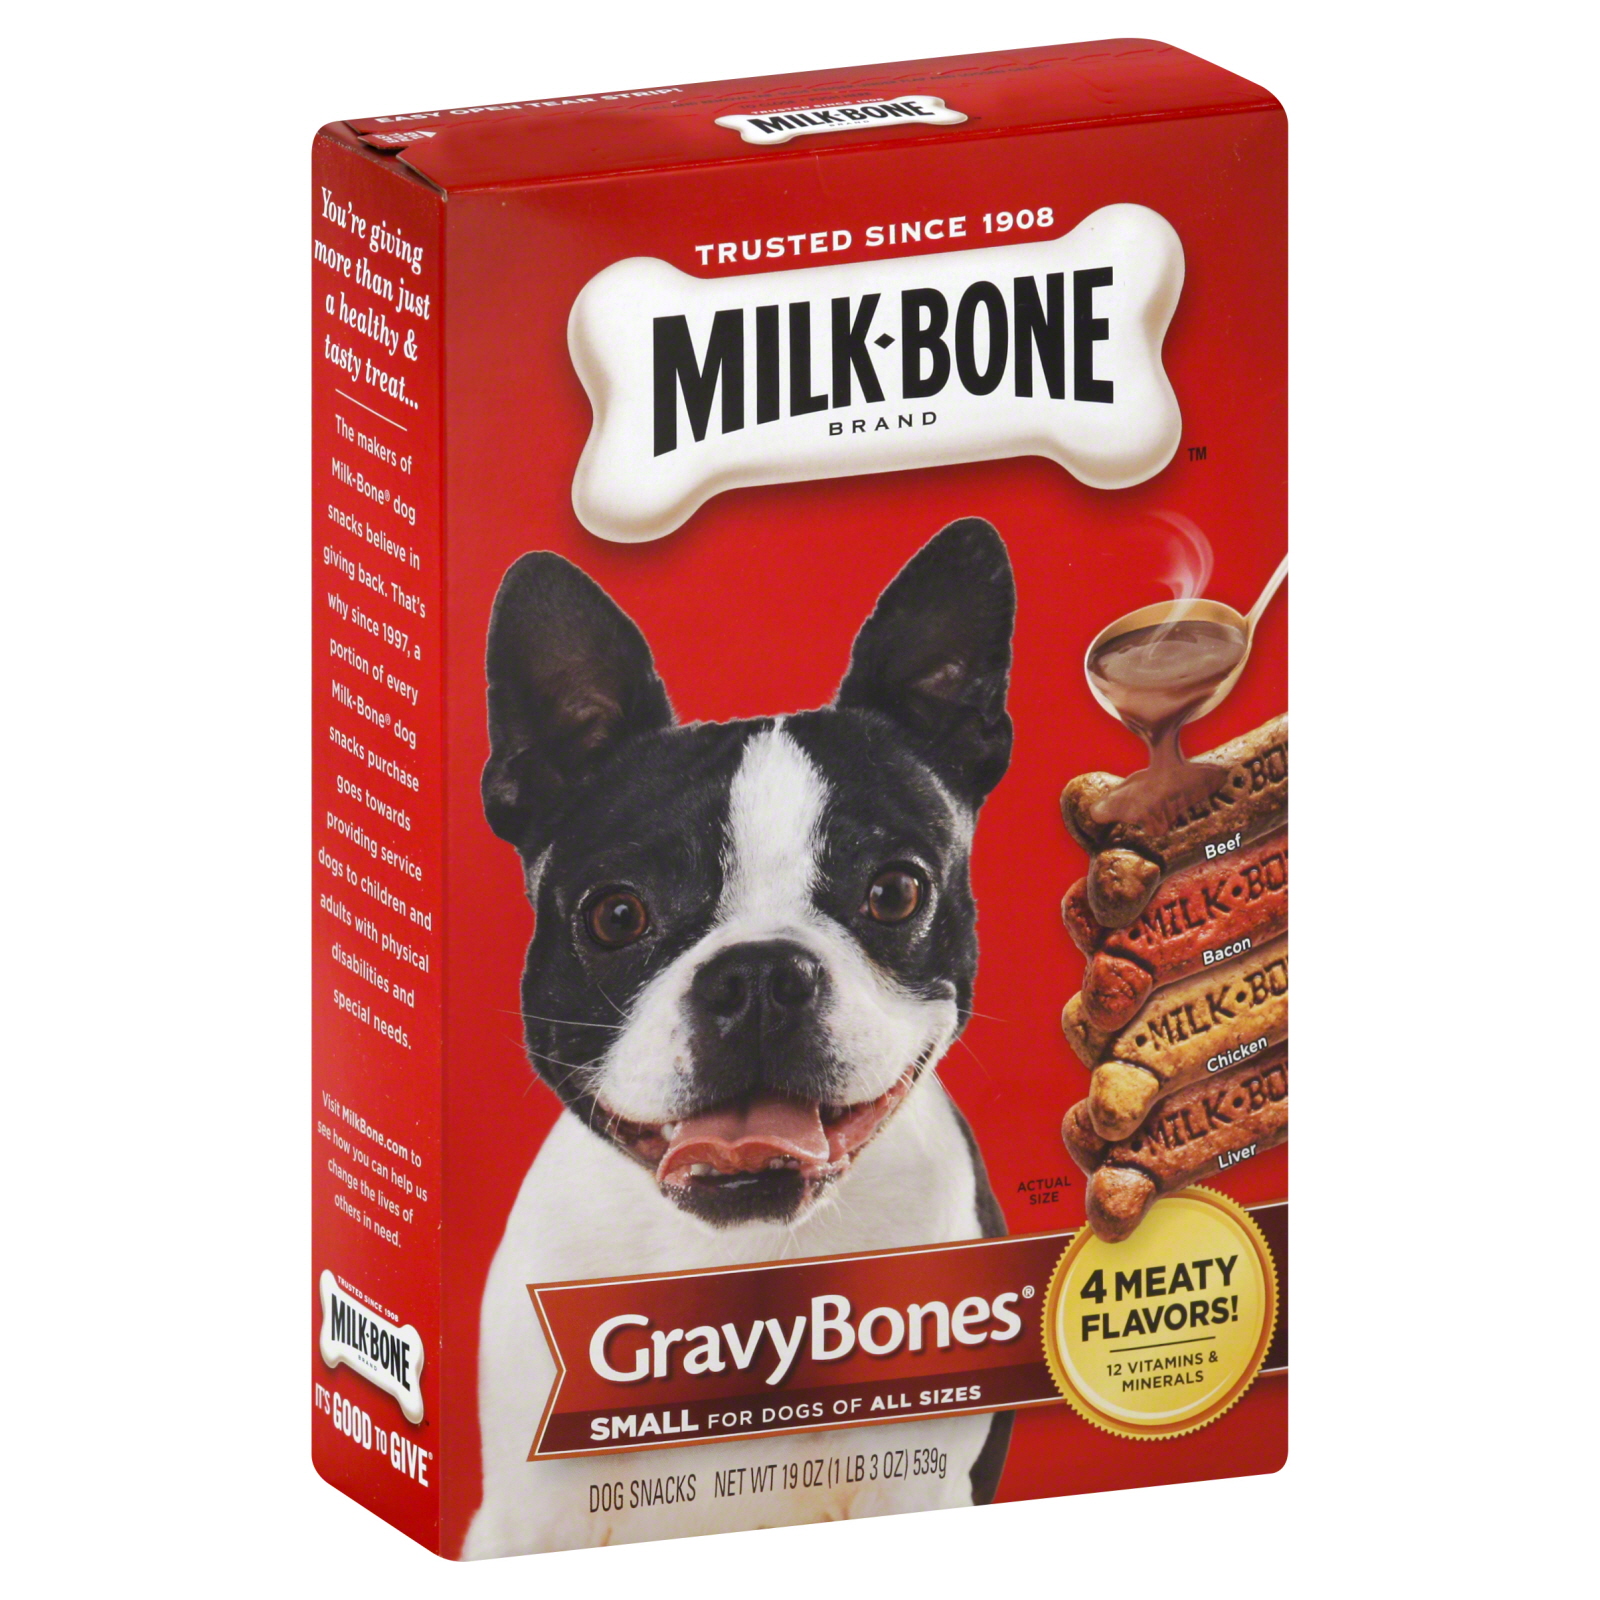 Milk-Bone Gravy Bones Small & Medium Dogs 19 Oz. Box